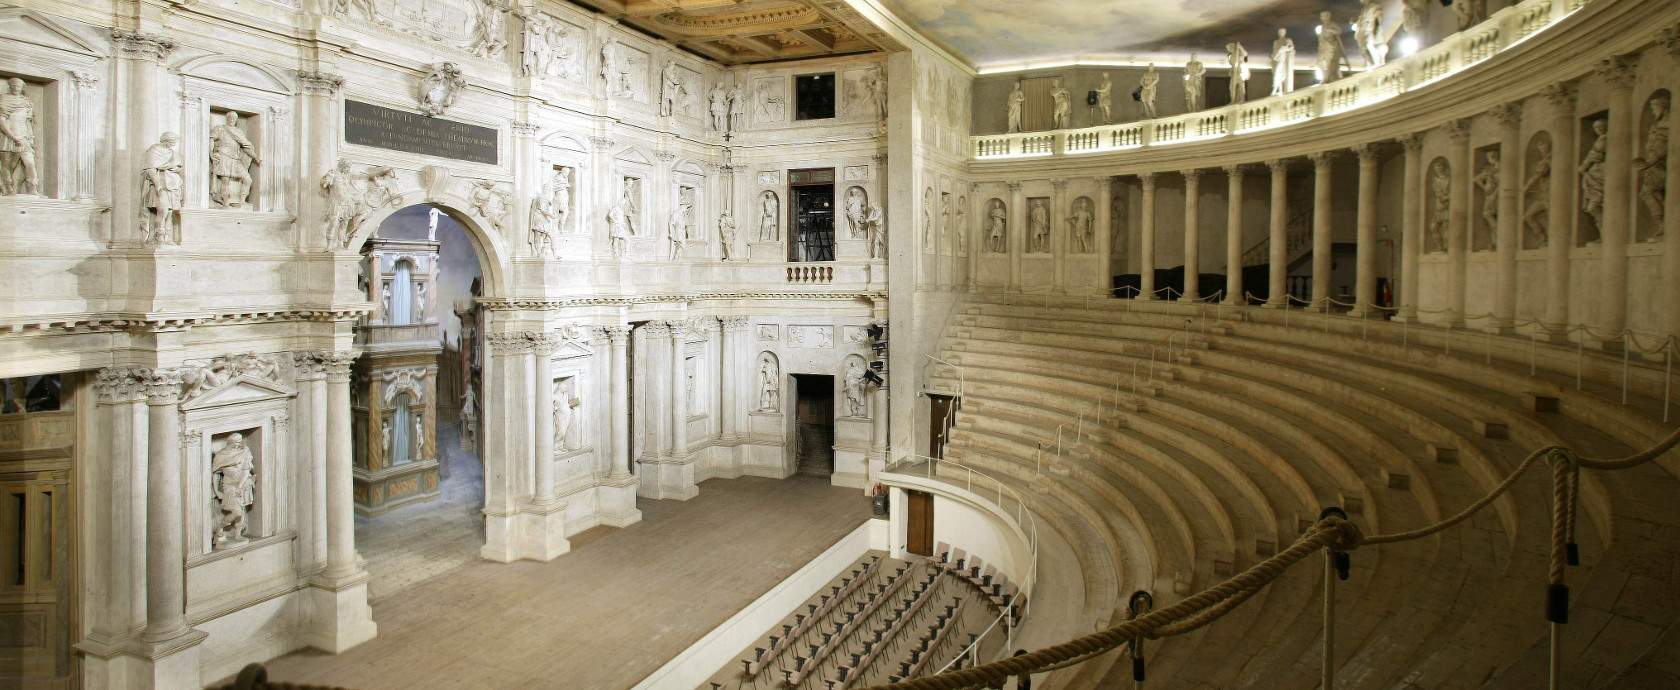 Vicenza, qué ver: 10 lugares en la ciudad de Palladio